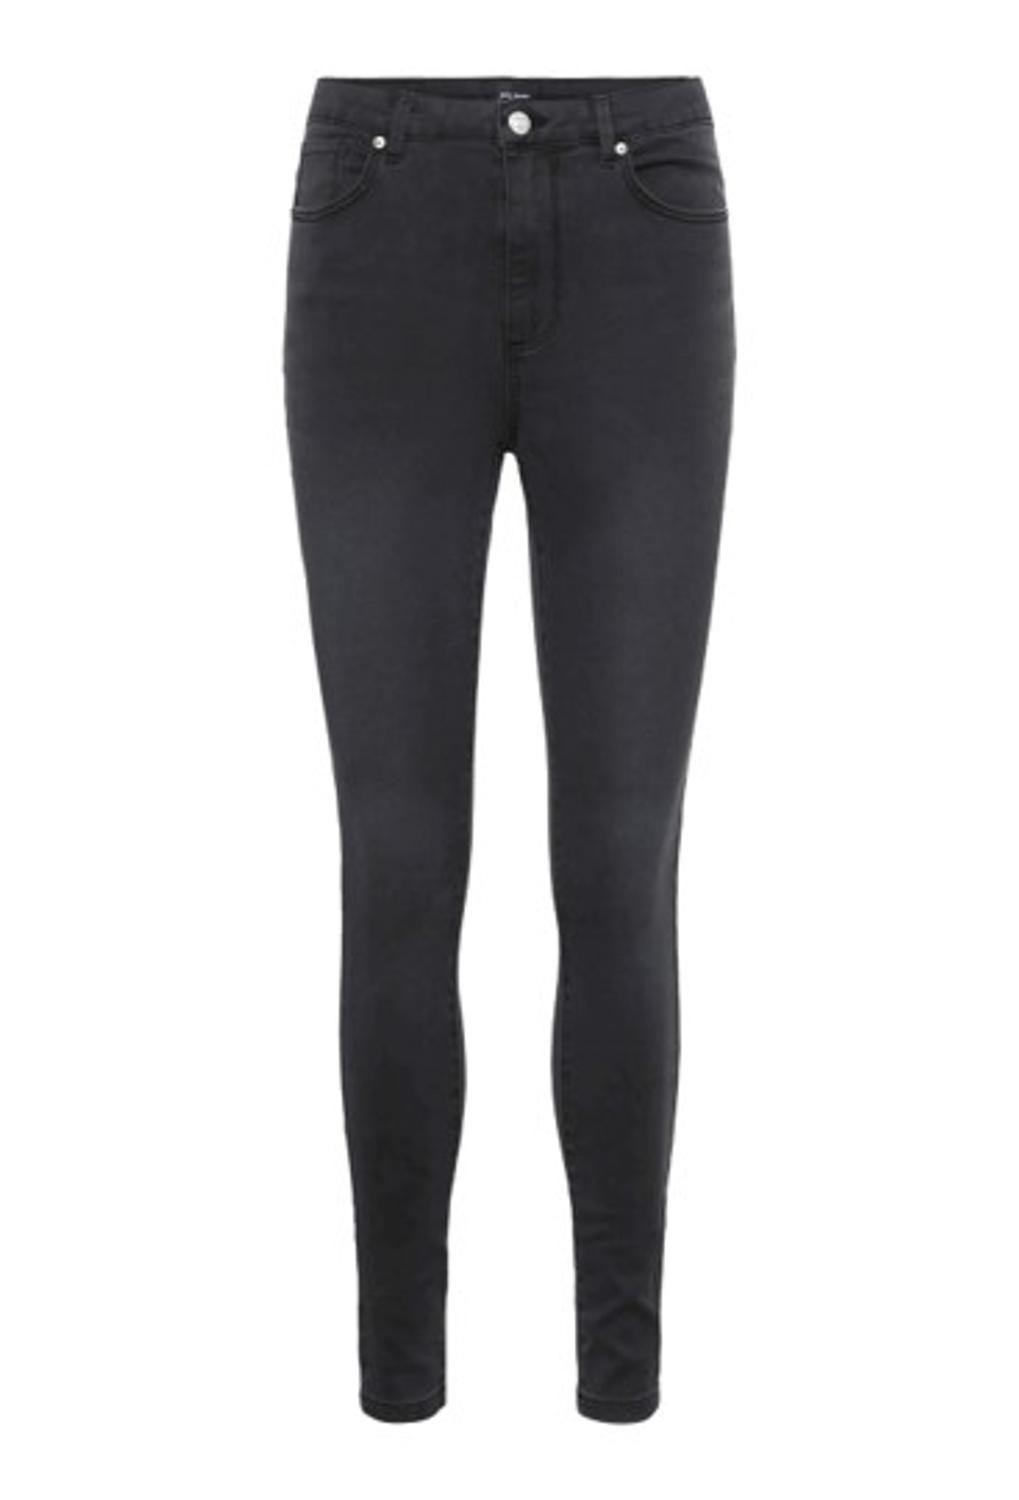 Vero Moda VMSOPHIA Slim Fit Jeans -Dark Grey Denim - 10291168